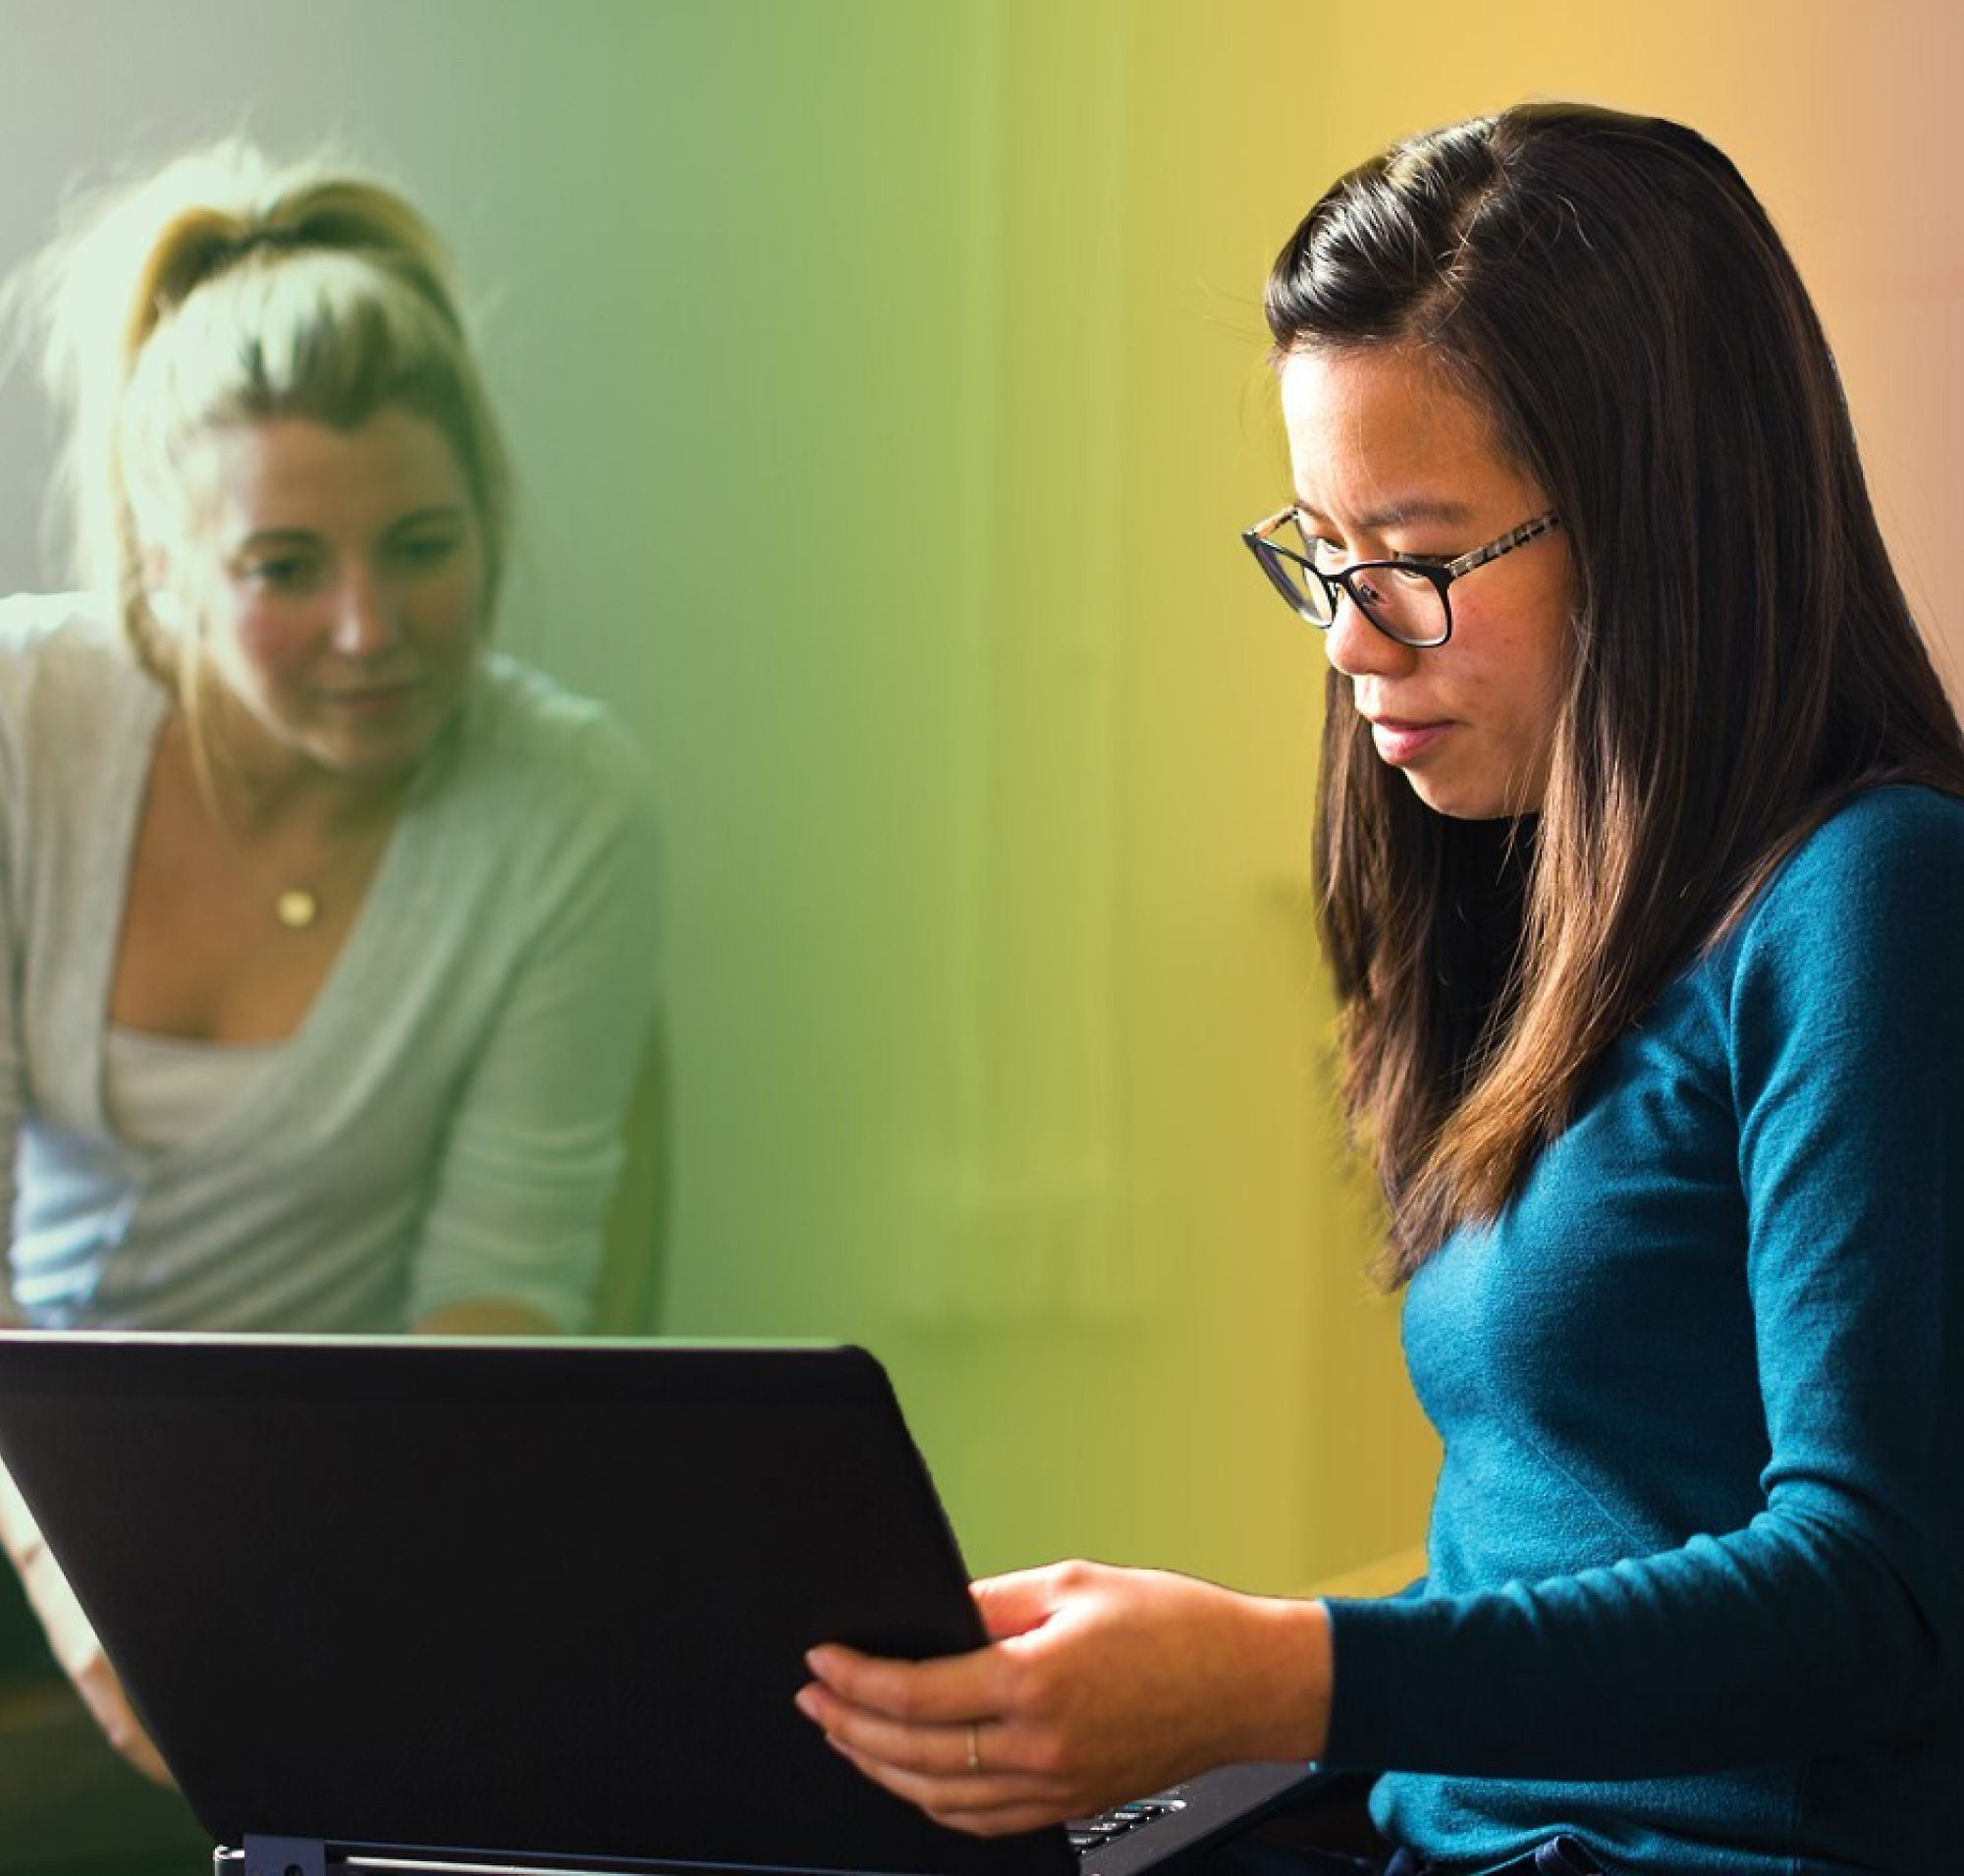 Biri sarı saçlı, diğeri gözlüklü iki kadın, rengarenk aydınlatılmış bir odada dizüstü bilgisayar üzerinde birlikte çalışıyor.